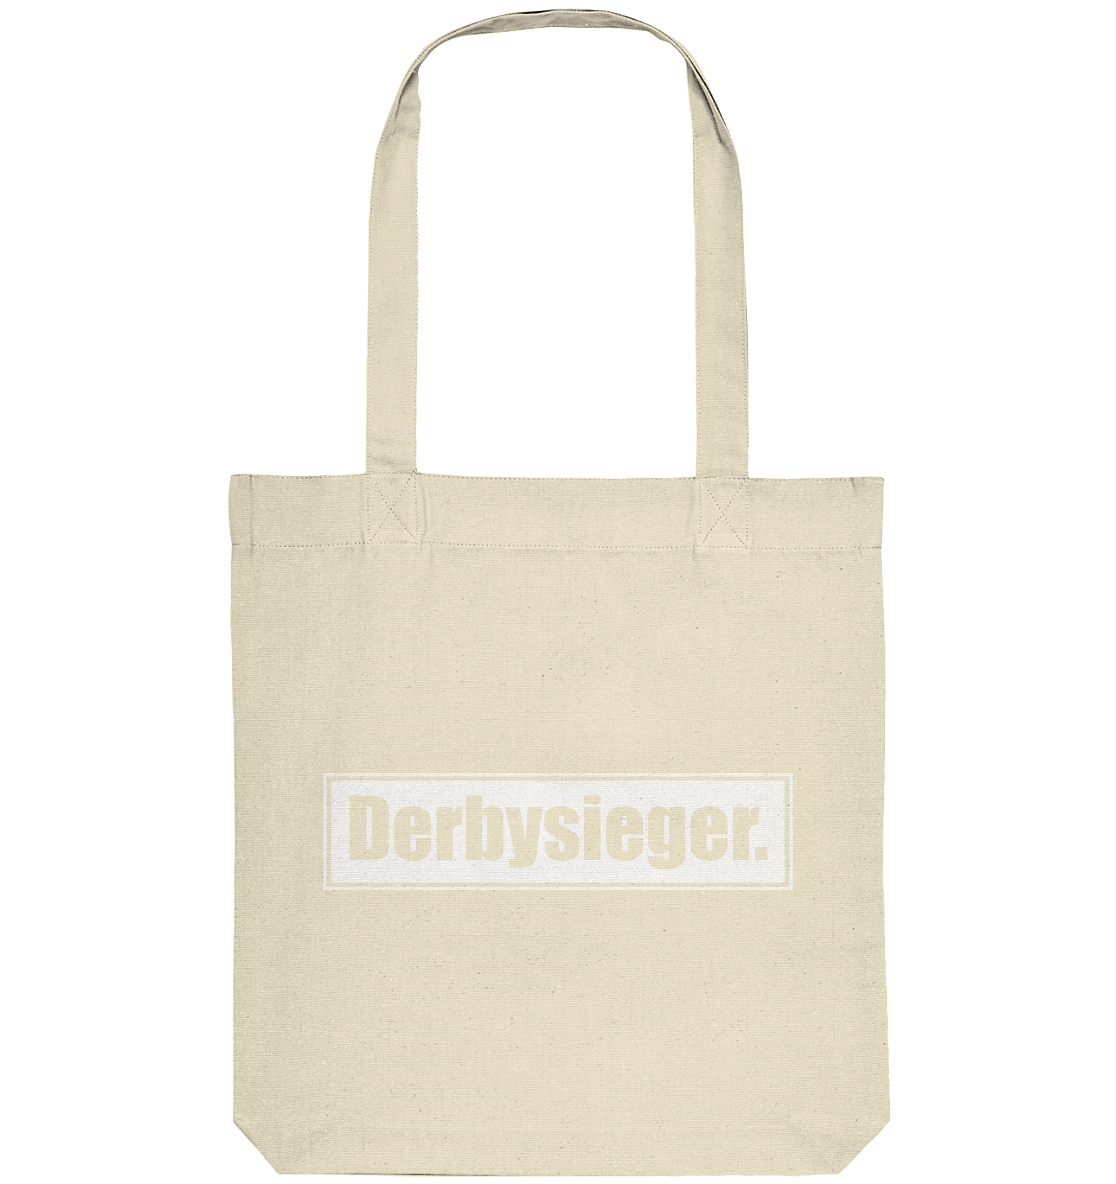 N.O.S.W. BLOCK Tote-Bag "Derbysieger." Organic Baumwolltasche natural